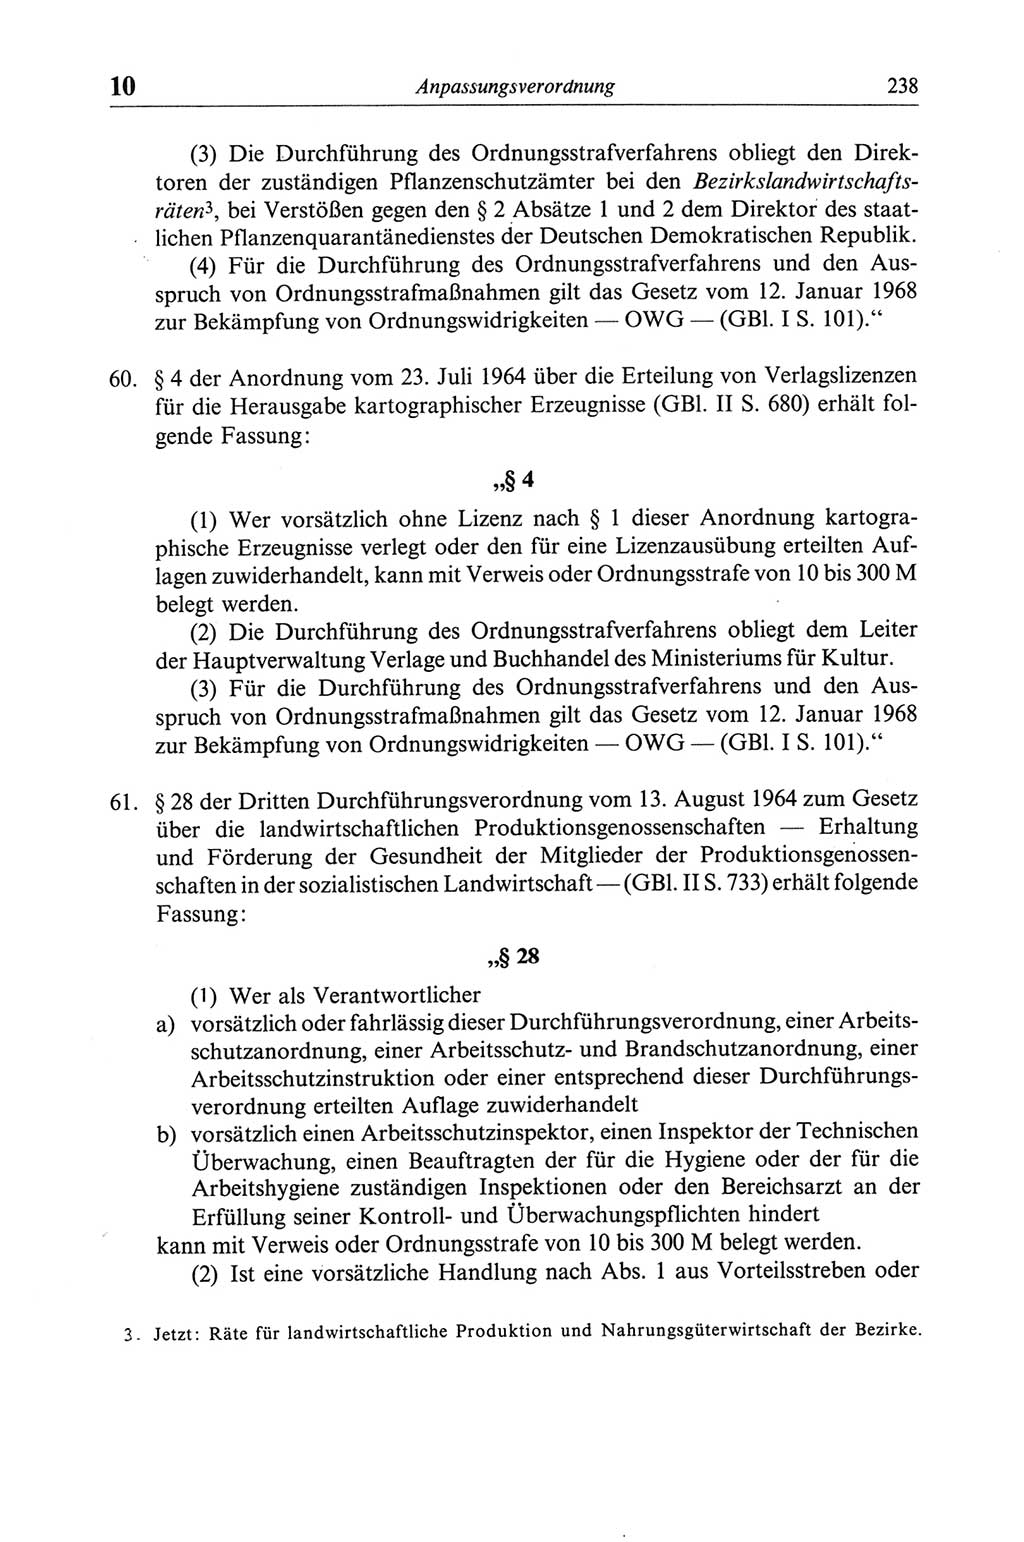 Strafgesetzbuch (StGB) der Deutschen Demokratischen Republik (DDR) und angrenzende Gesetze und Bestimmungen 1968, Seite 238 (StGB Ges. Best. DDR 1968, S. 238)